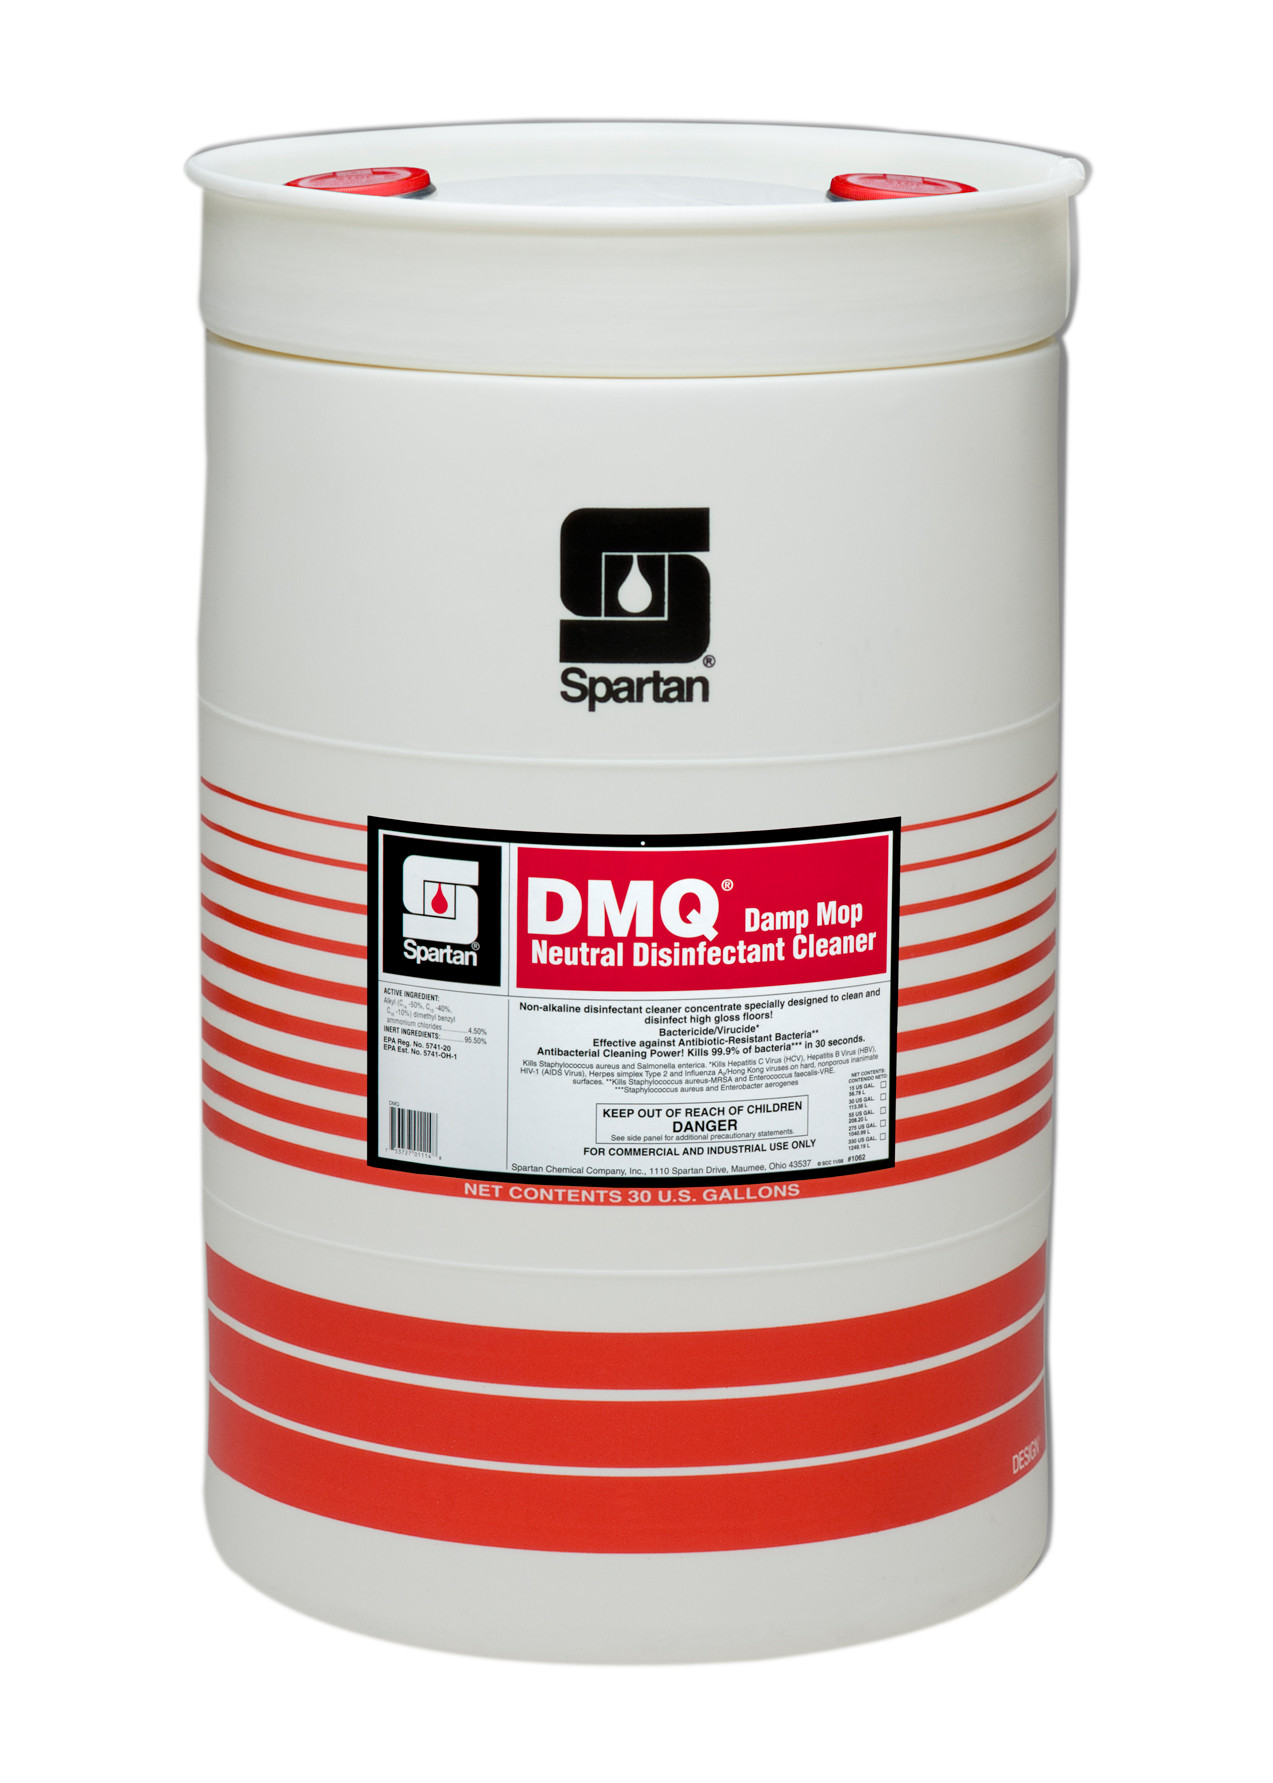 Spartan Chemical Company DMQ, 30 GAL DRUM